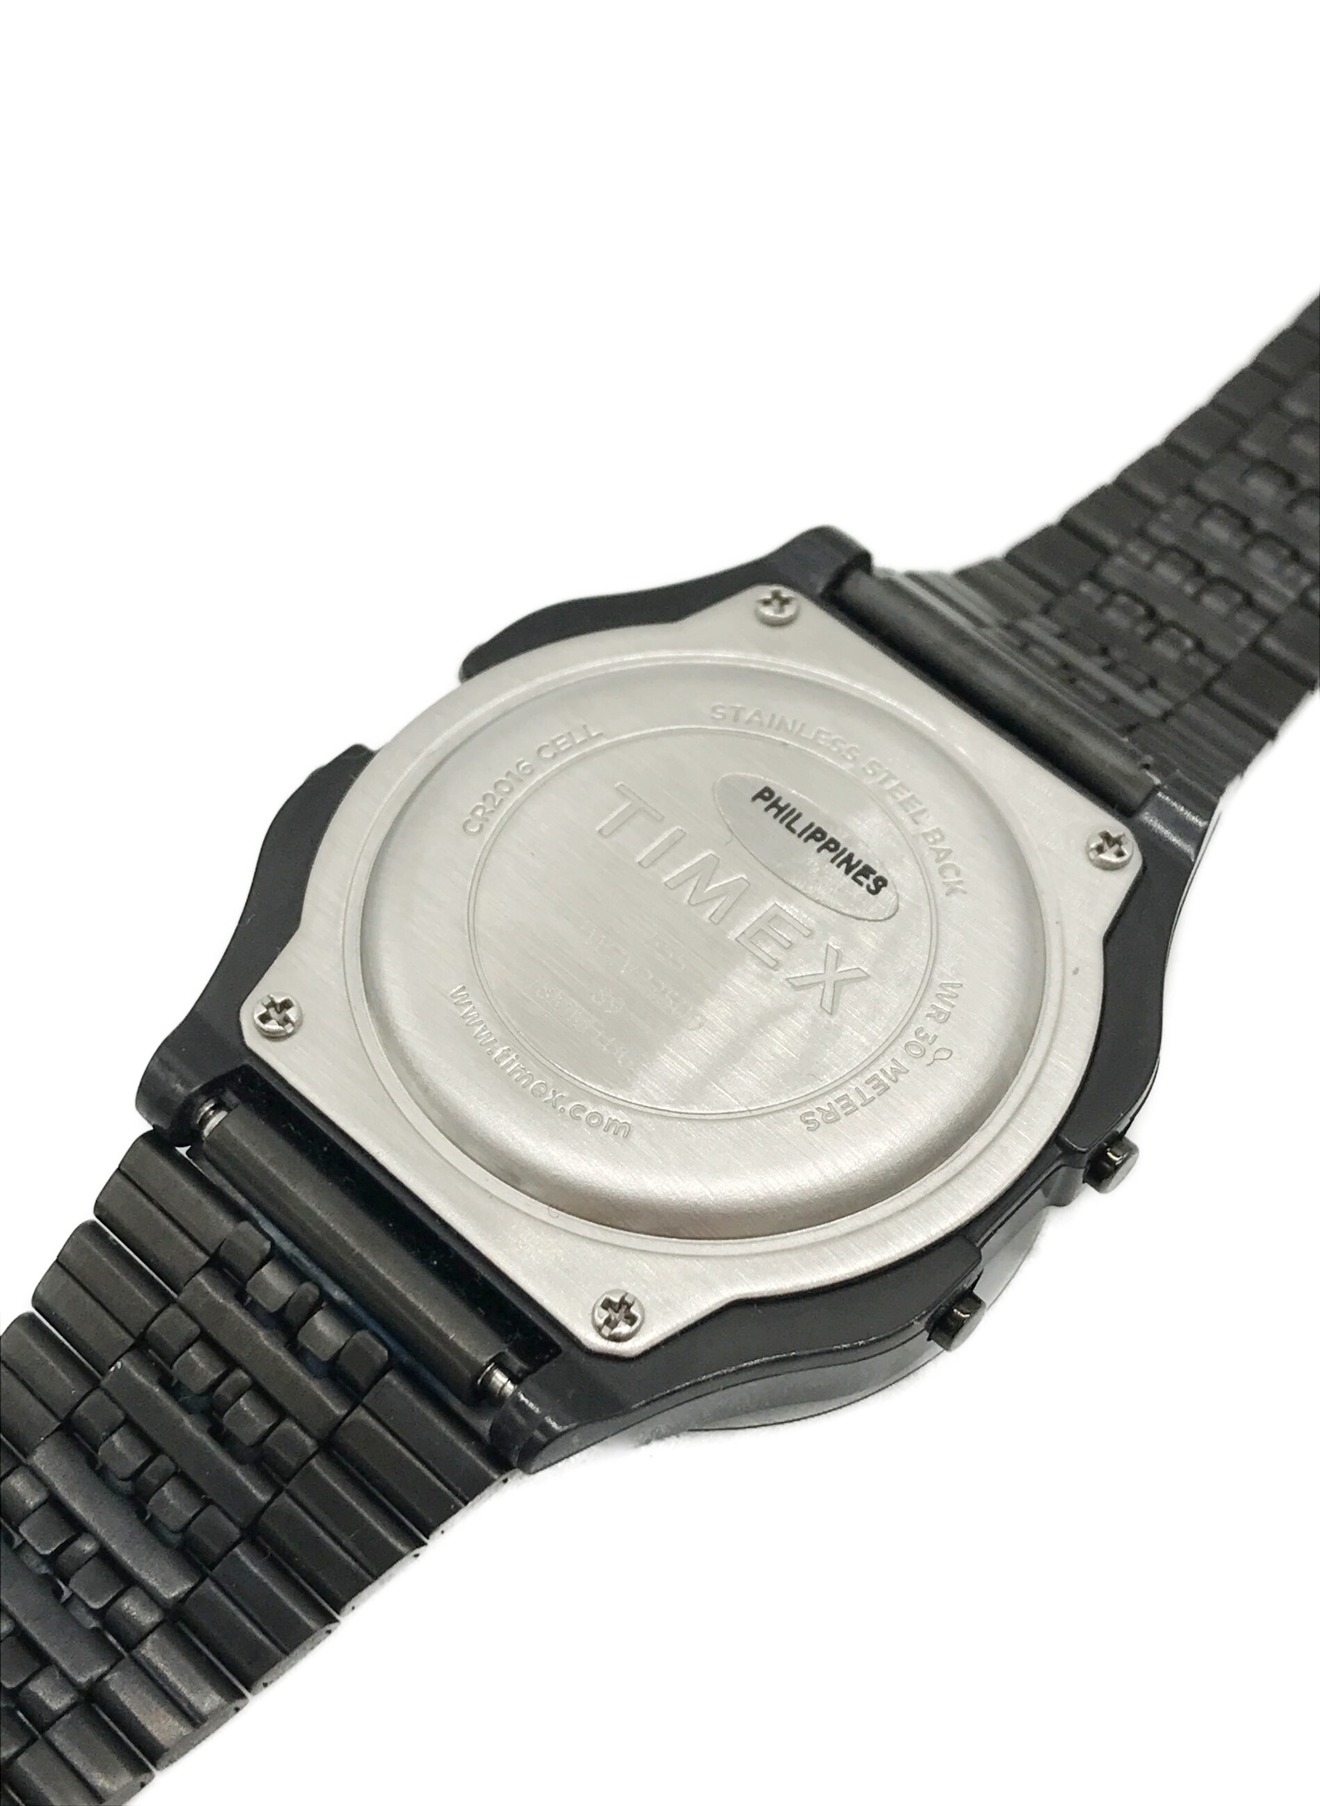 TIMEX (タイメックス) WIND AND SEA (ウィンダンシー) 腕時計 サイズ:下記参照